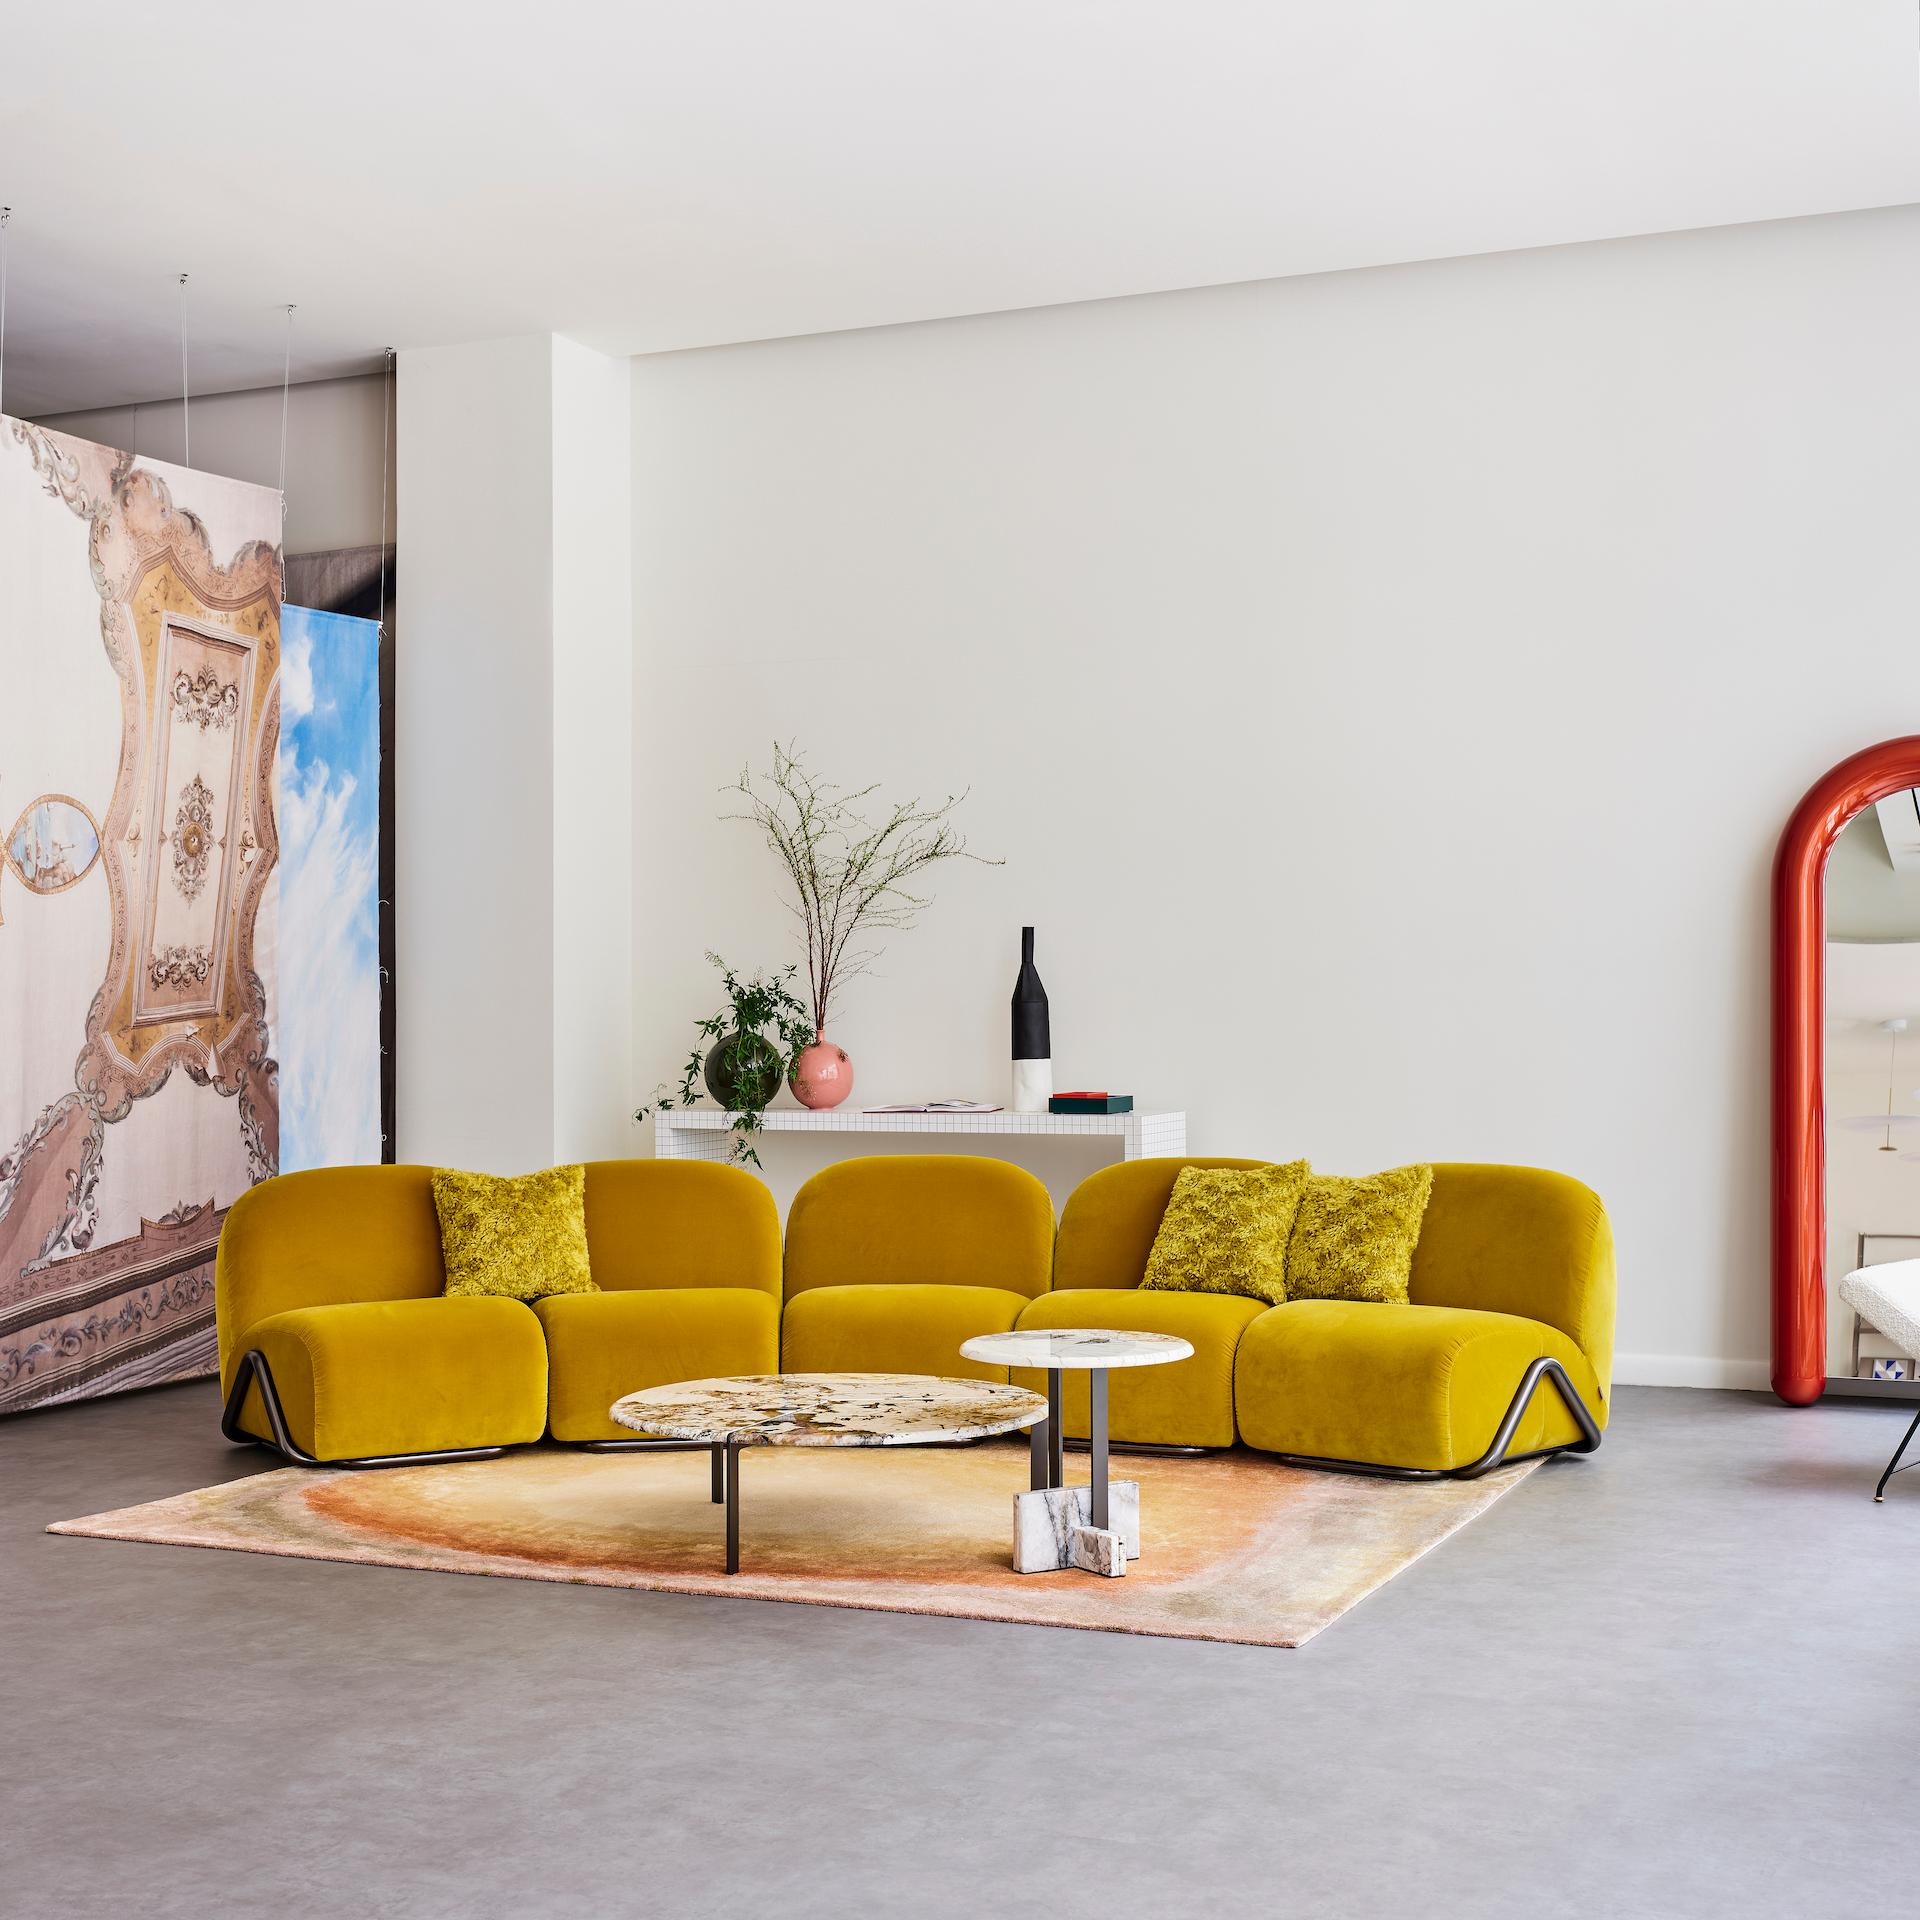 Ensemble de deux tables Joaquim.
1) diamètre de 100 cm
2) diamètre de 50 cm, 
La douceur du design des meubles brésiliens entre les années 40 et 60 dans l'architecture moderniste de Niemeyer, Costa, Vilanova Artigas et Bo Bardi est l'inspiration